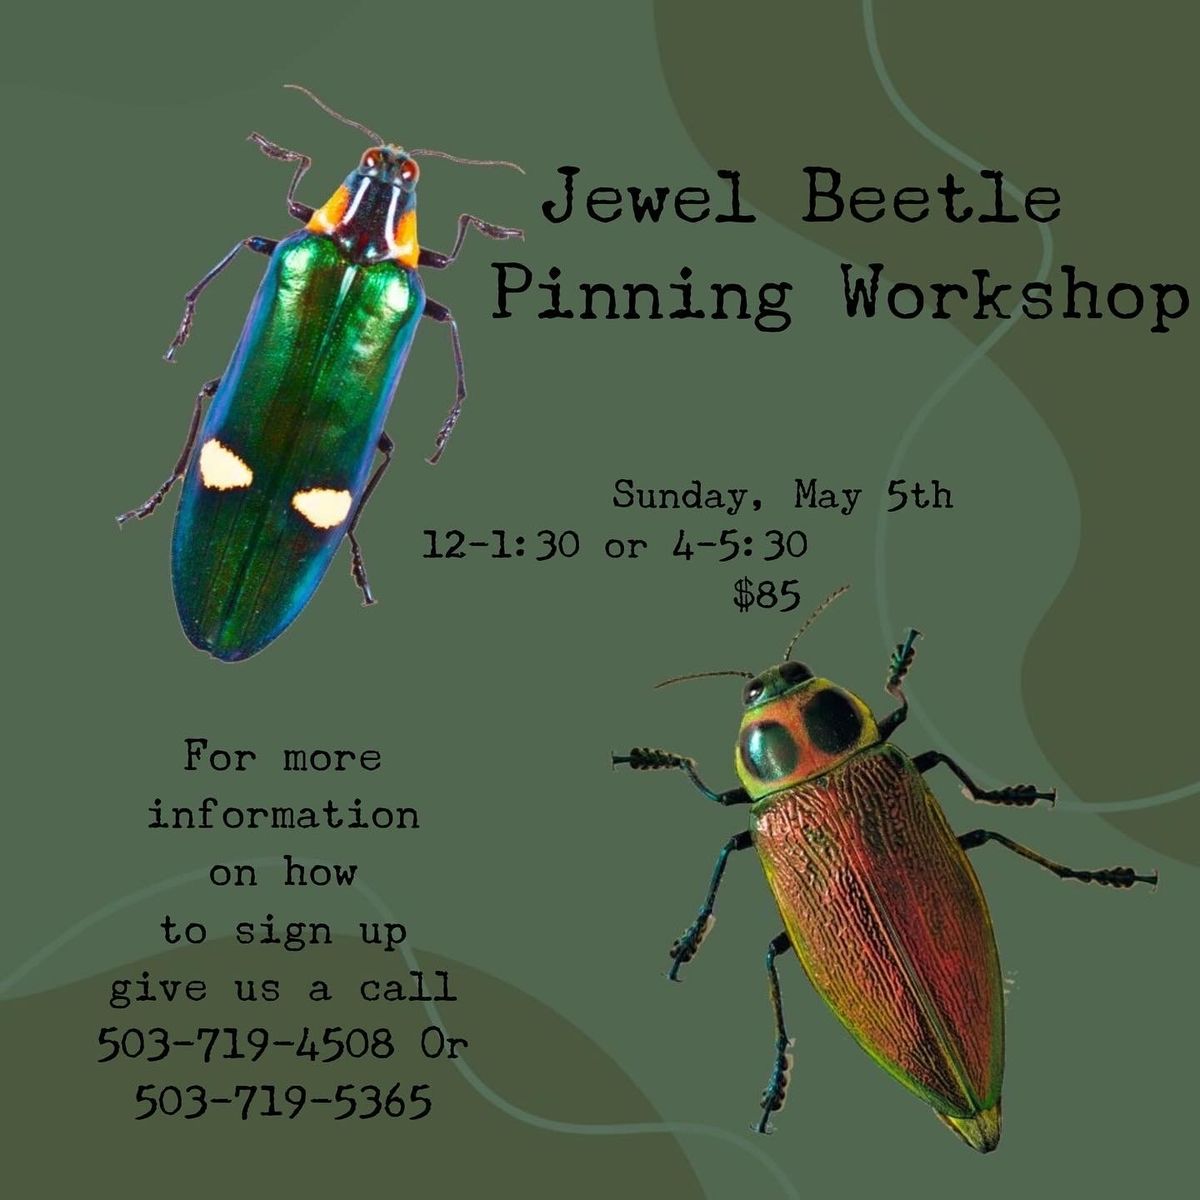 Jewel Beetle Pinning Workshop